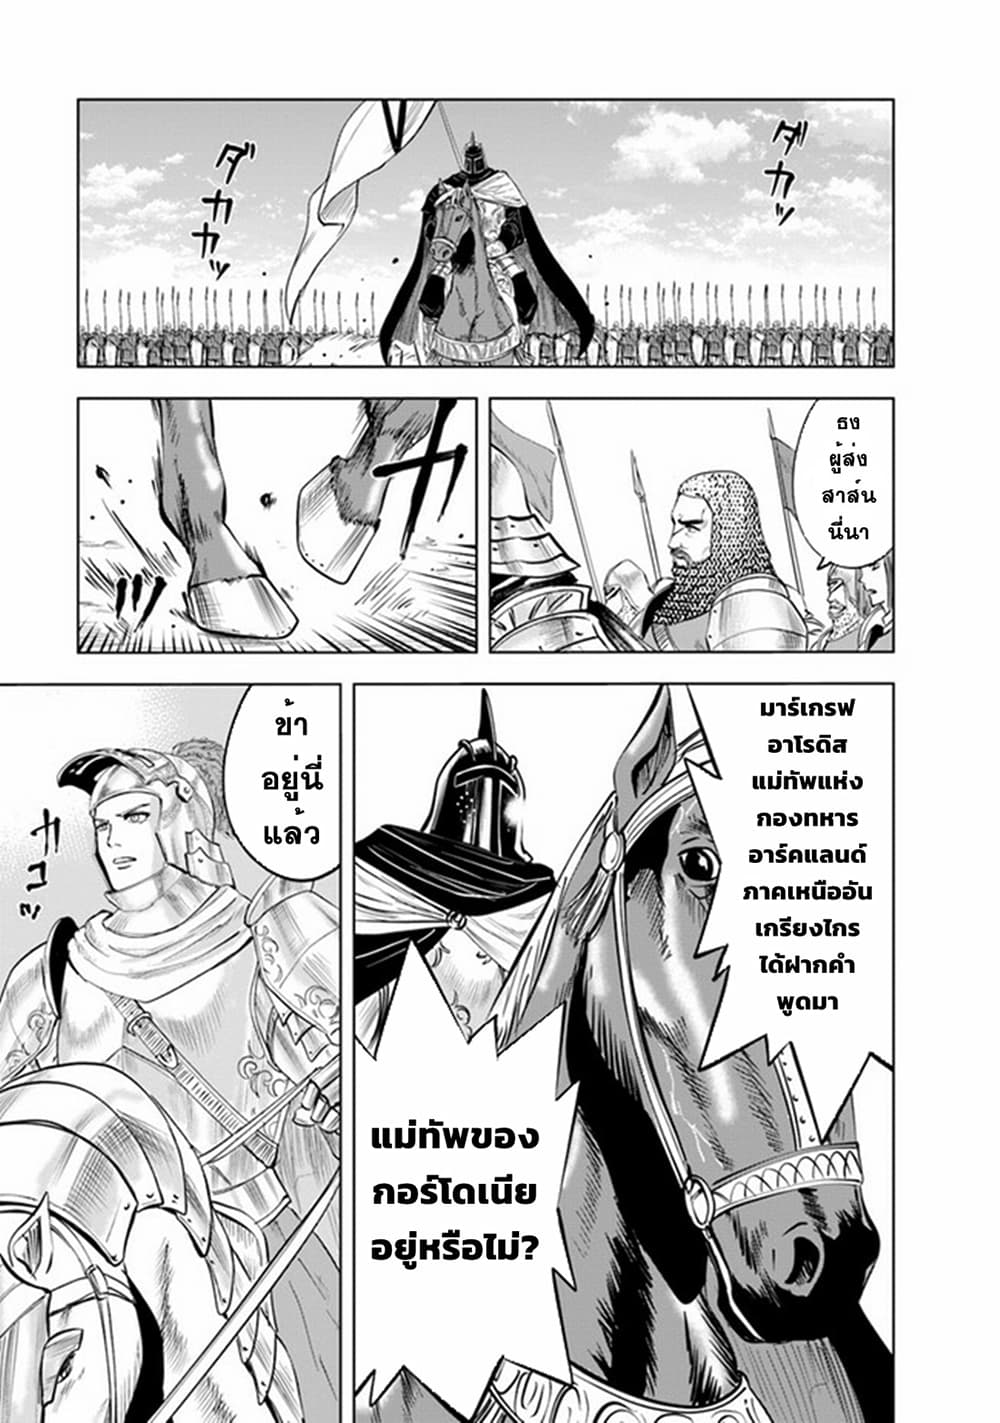 Oukoku e Tsuzuku Michi dorei Kenshi no Nariagari Eiyutan (Haaremu Raifu) - Road to the Kingdom Slave Swordsman the Rise of Heroes - Harem Life 48-48